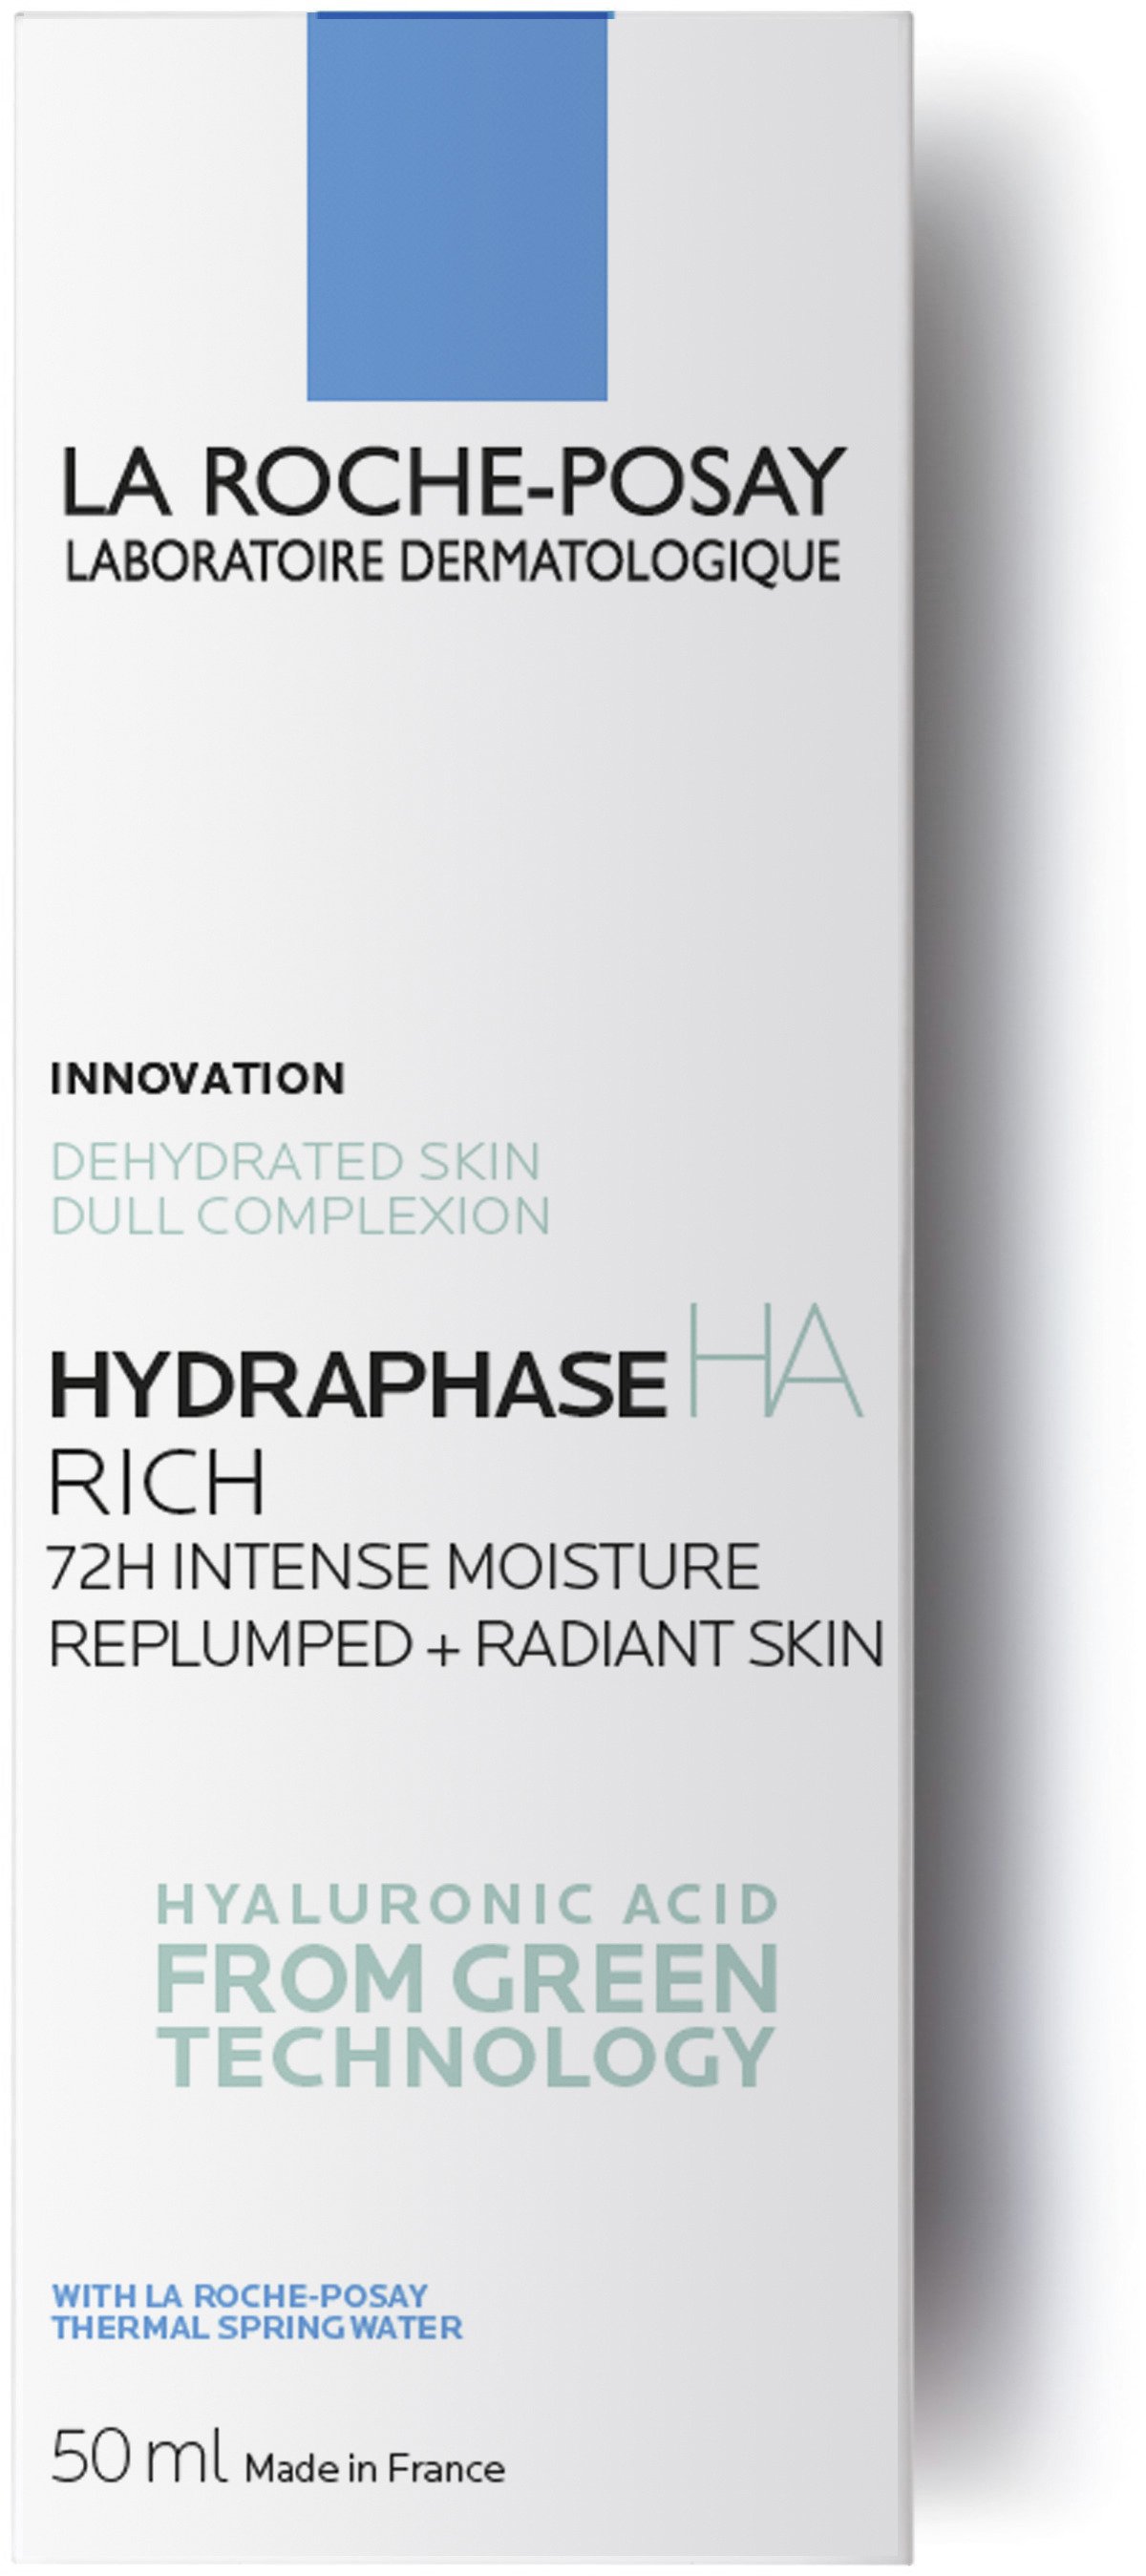 La Roche Posay Hydraphase HA Riche 72h Intense Moisture 50 ml